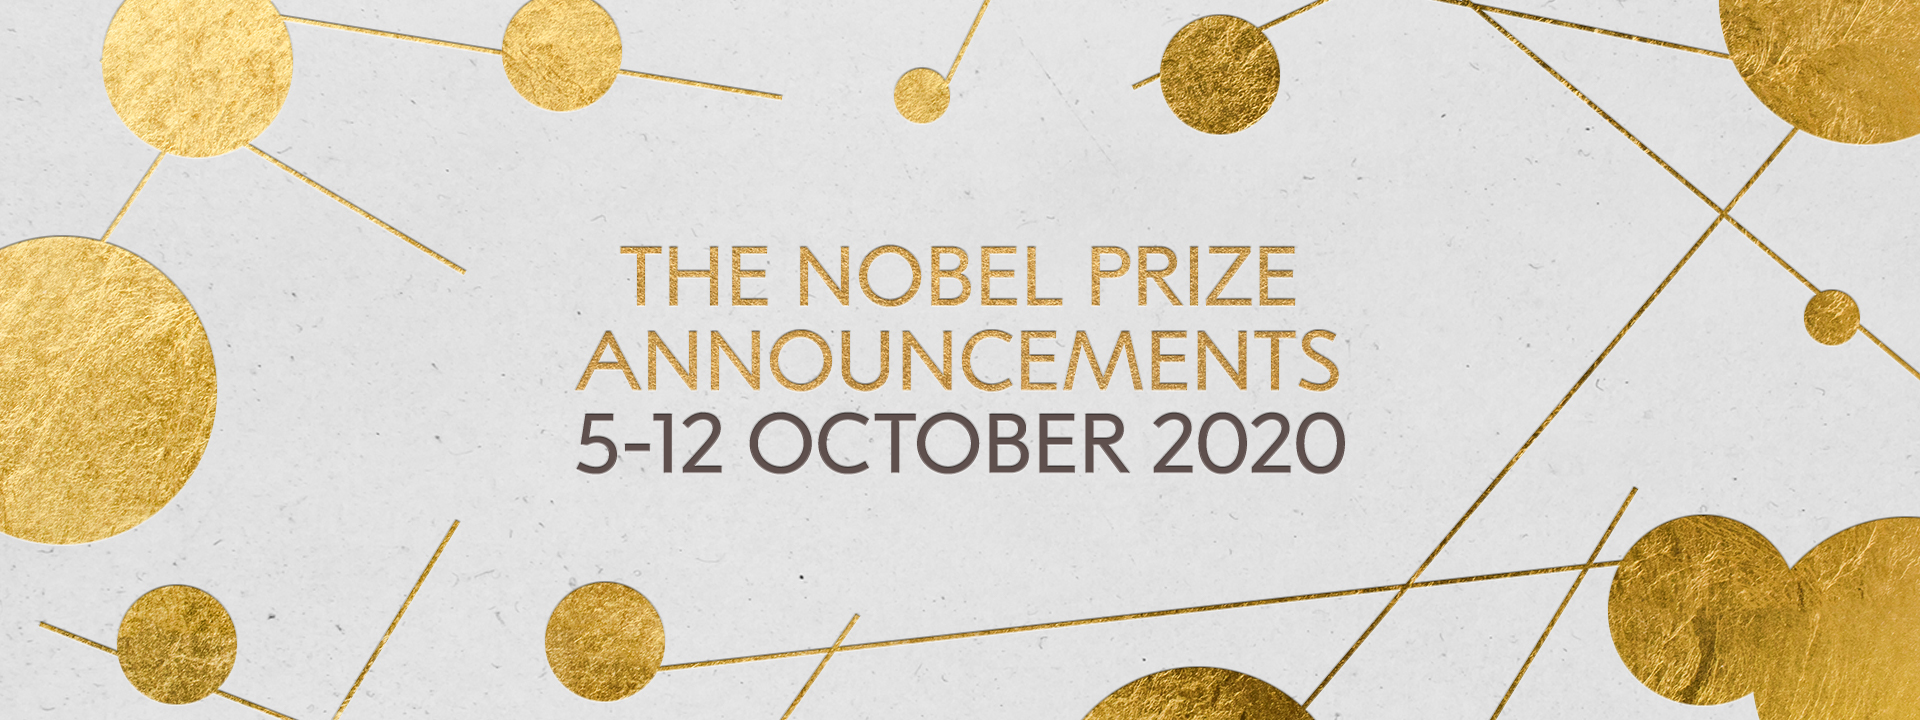 Premios Nobel, a distancia por la pandemia